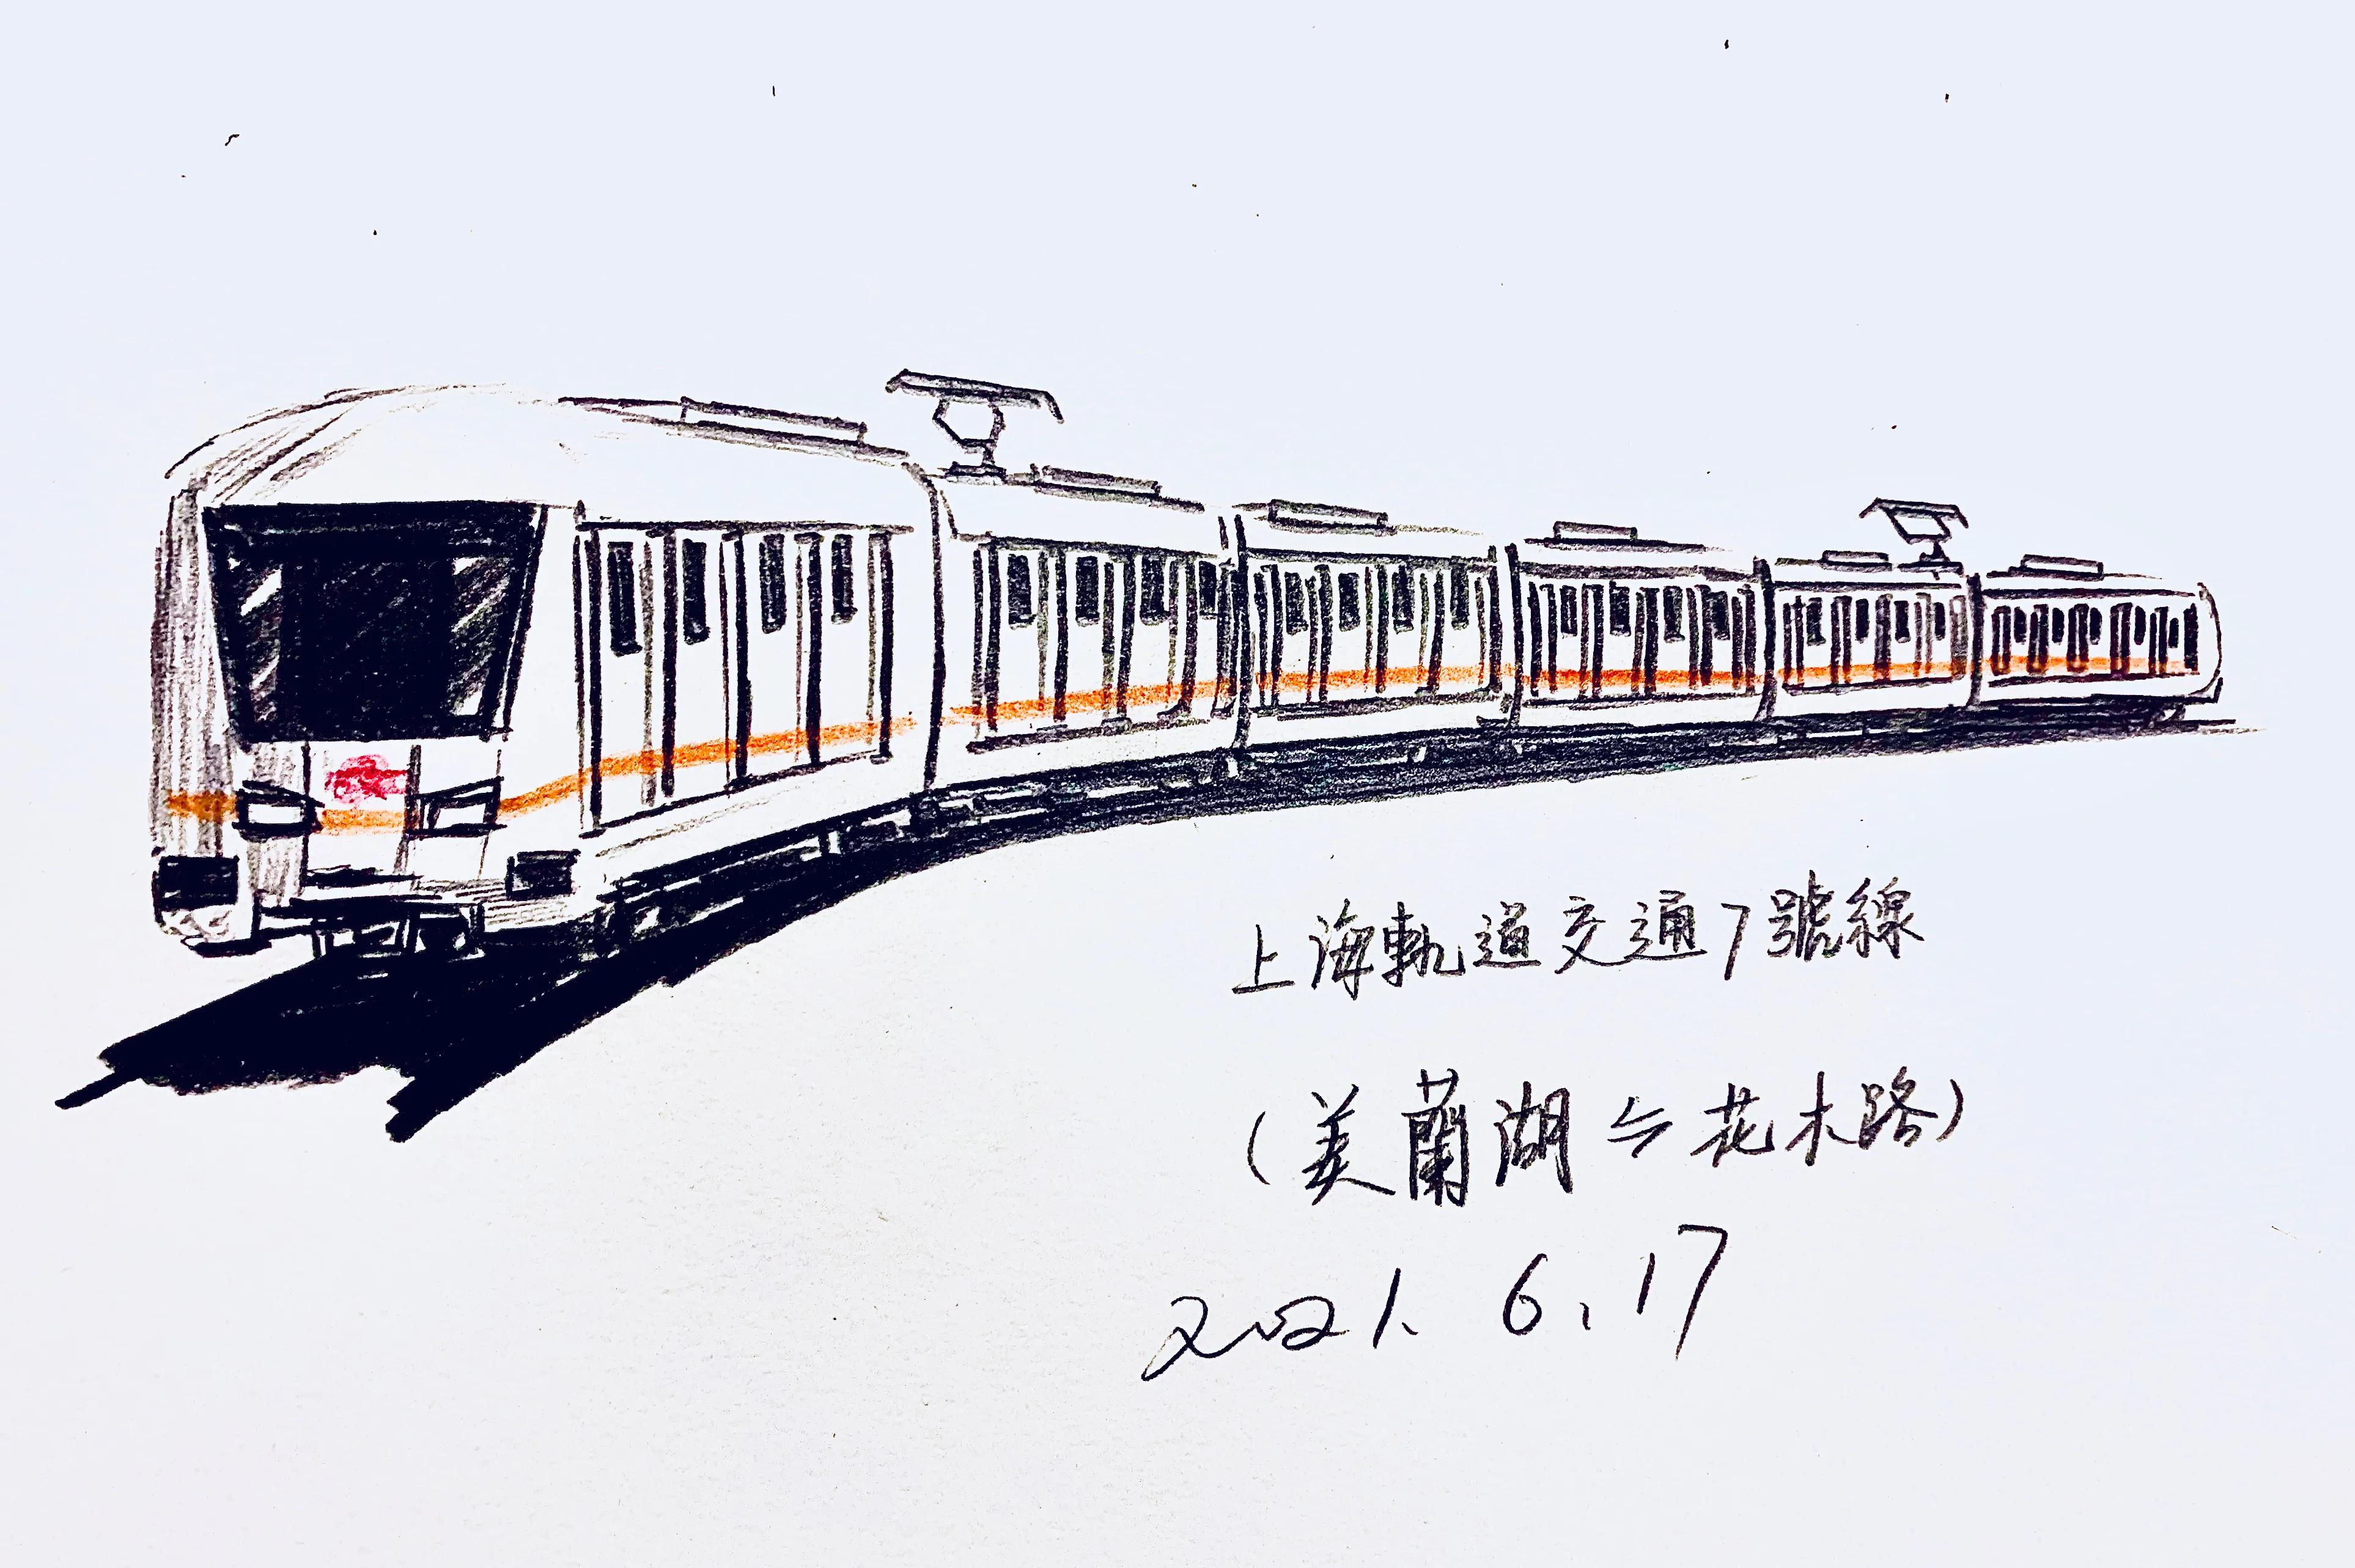 「上海轨道交通」小科普——上海轨道交通7号线